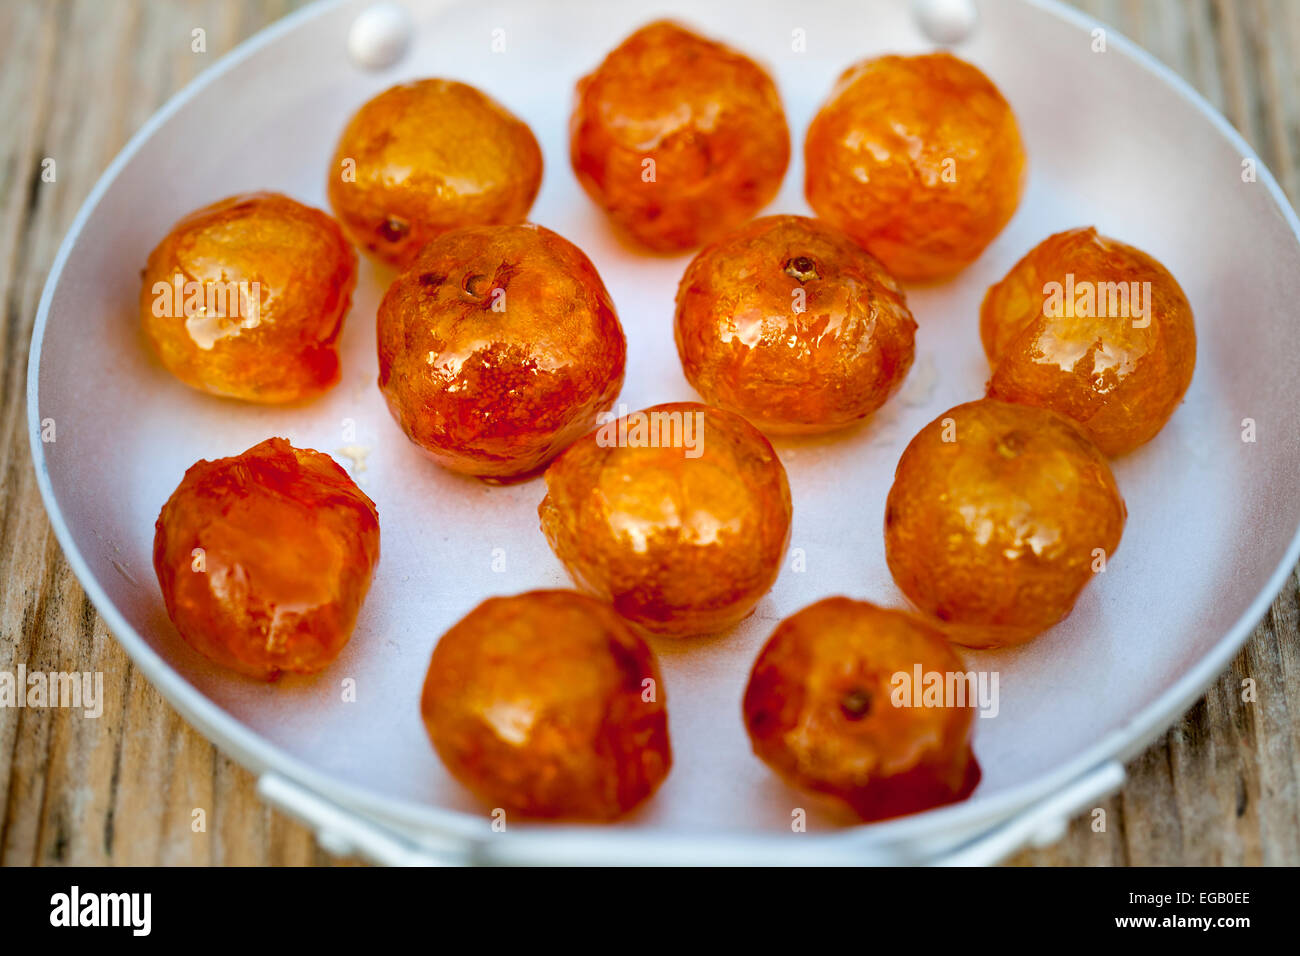 Conserves de fruits confits Orange Kumquat - une spécialité de Hoi An Banque D'Images